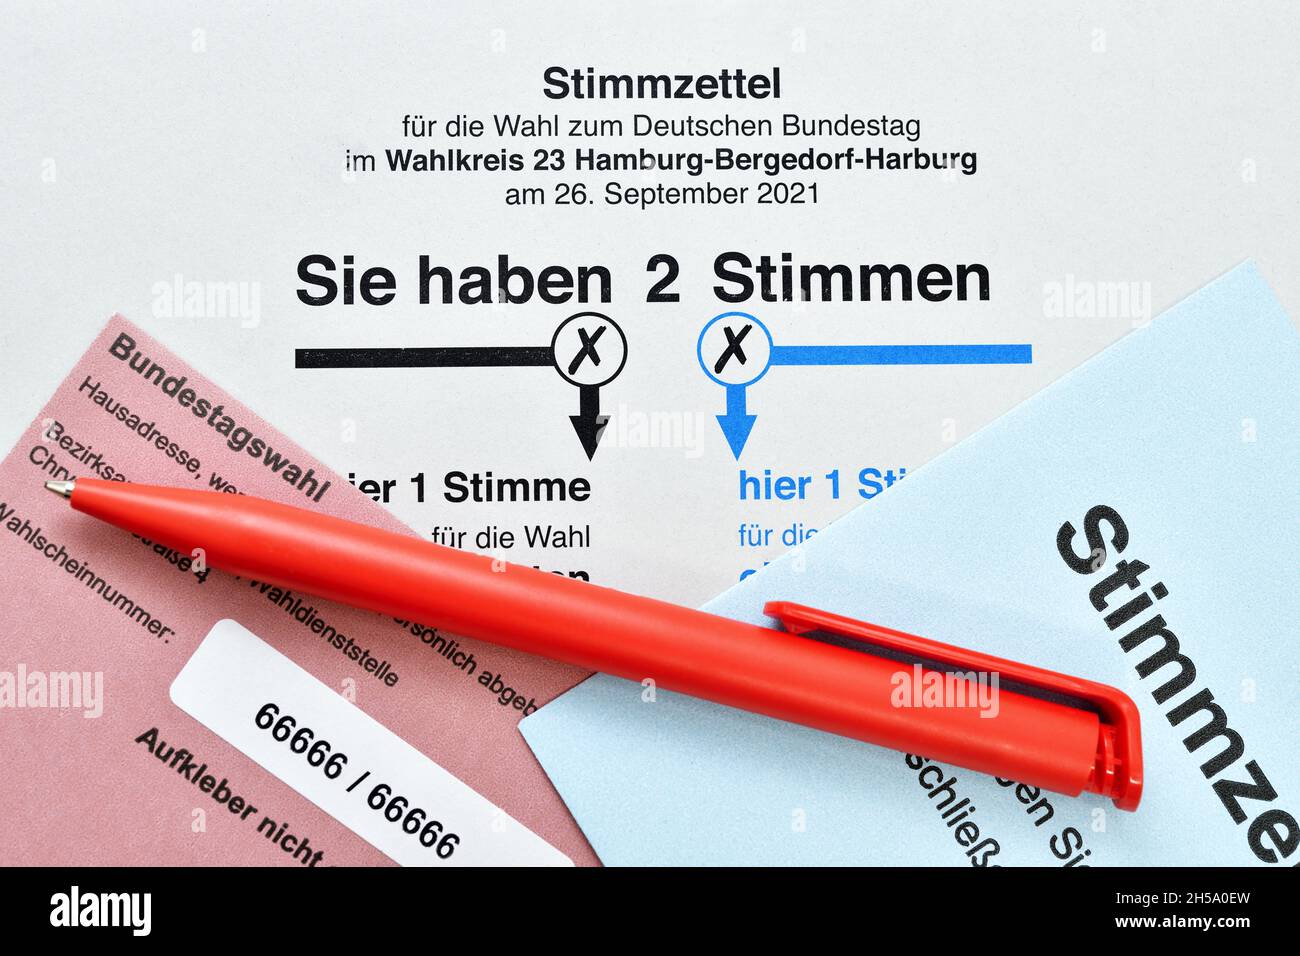 Stimmzettel zur Bundestagswahl 2021 Foto de stock